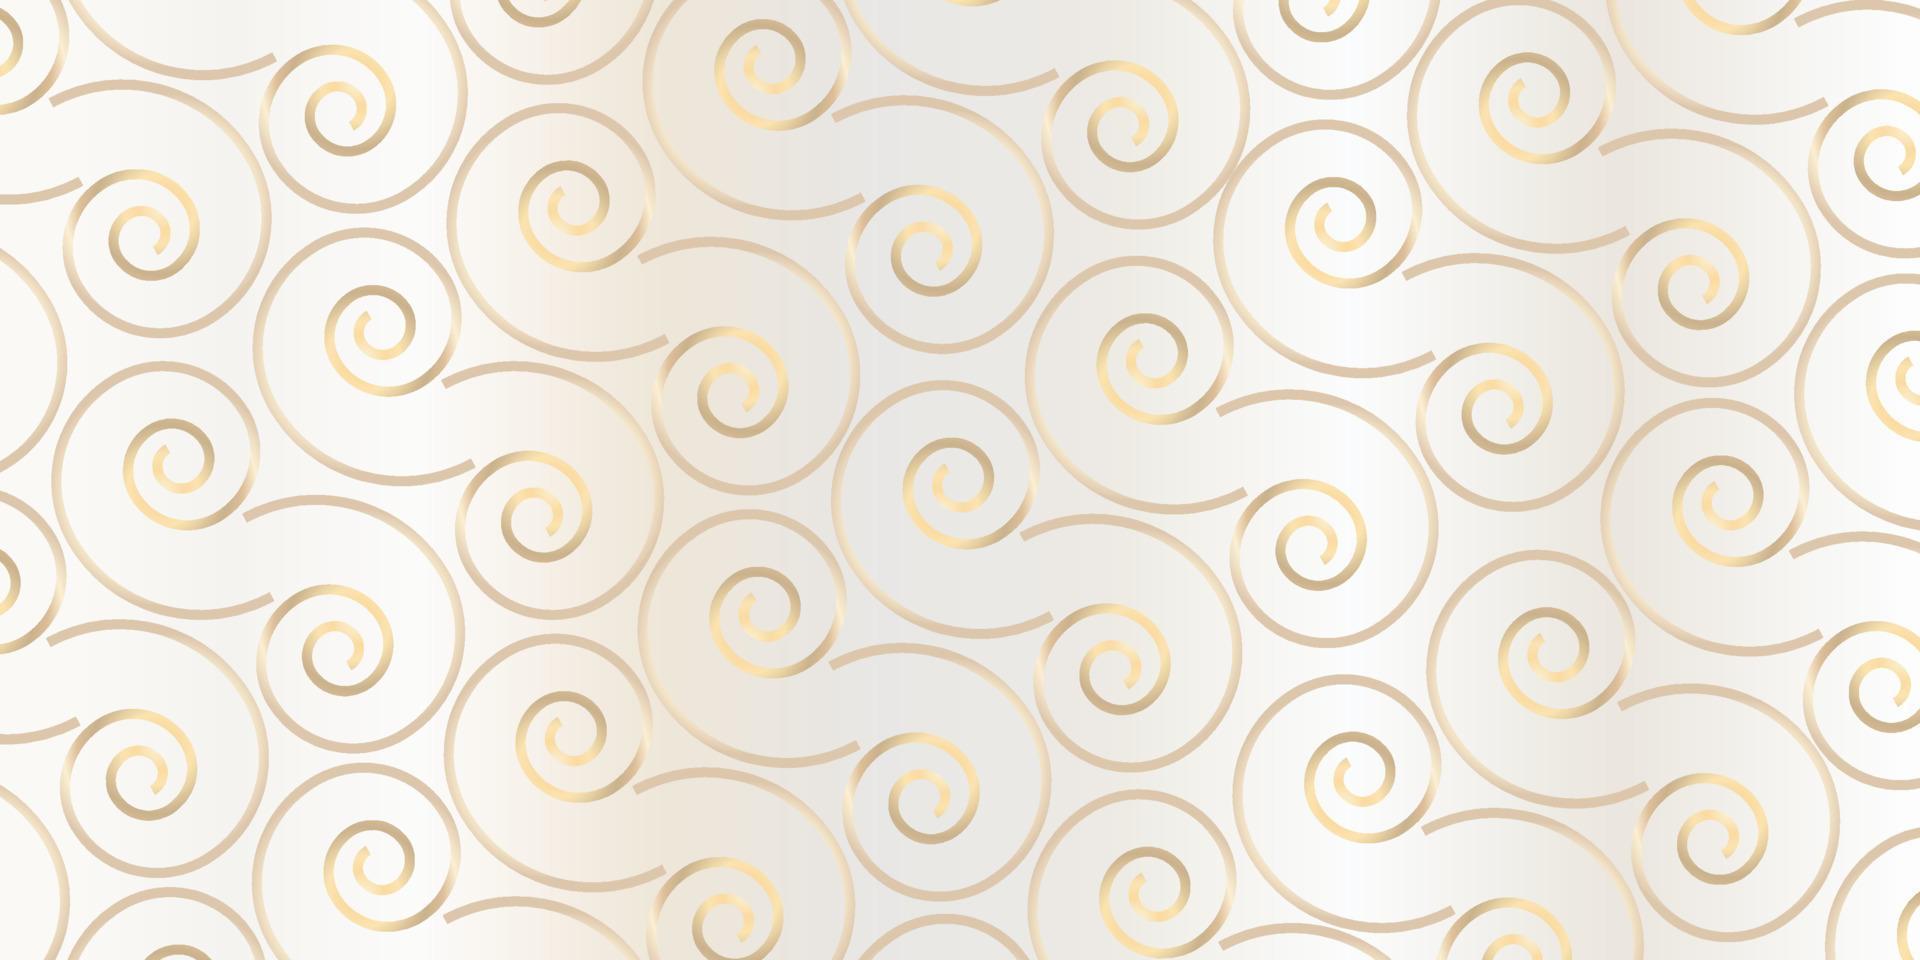 padrão geométrico. padrões de impressão de design gráfico geométrico abstrato. padrão único de fundo branco e dourado vetor